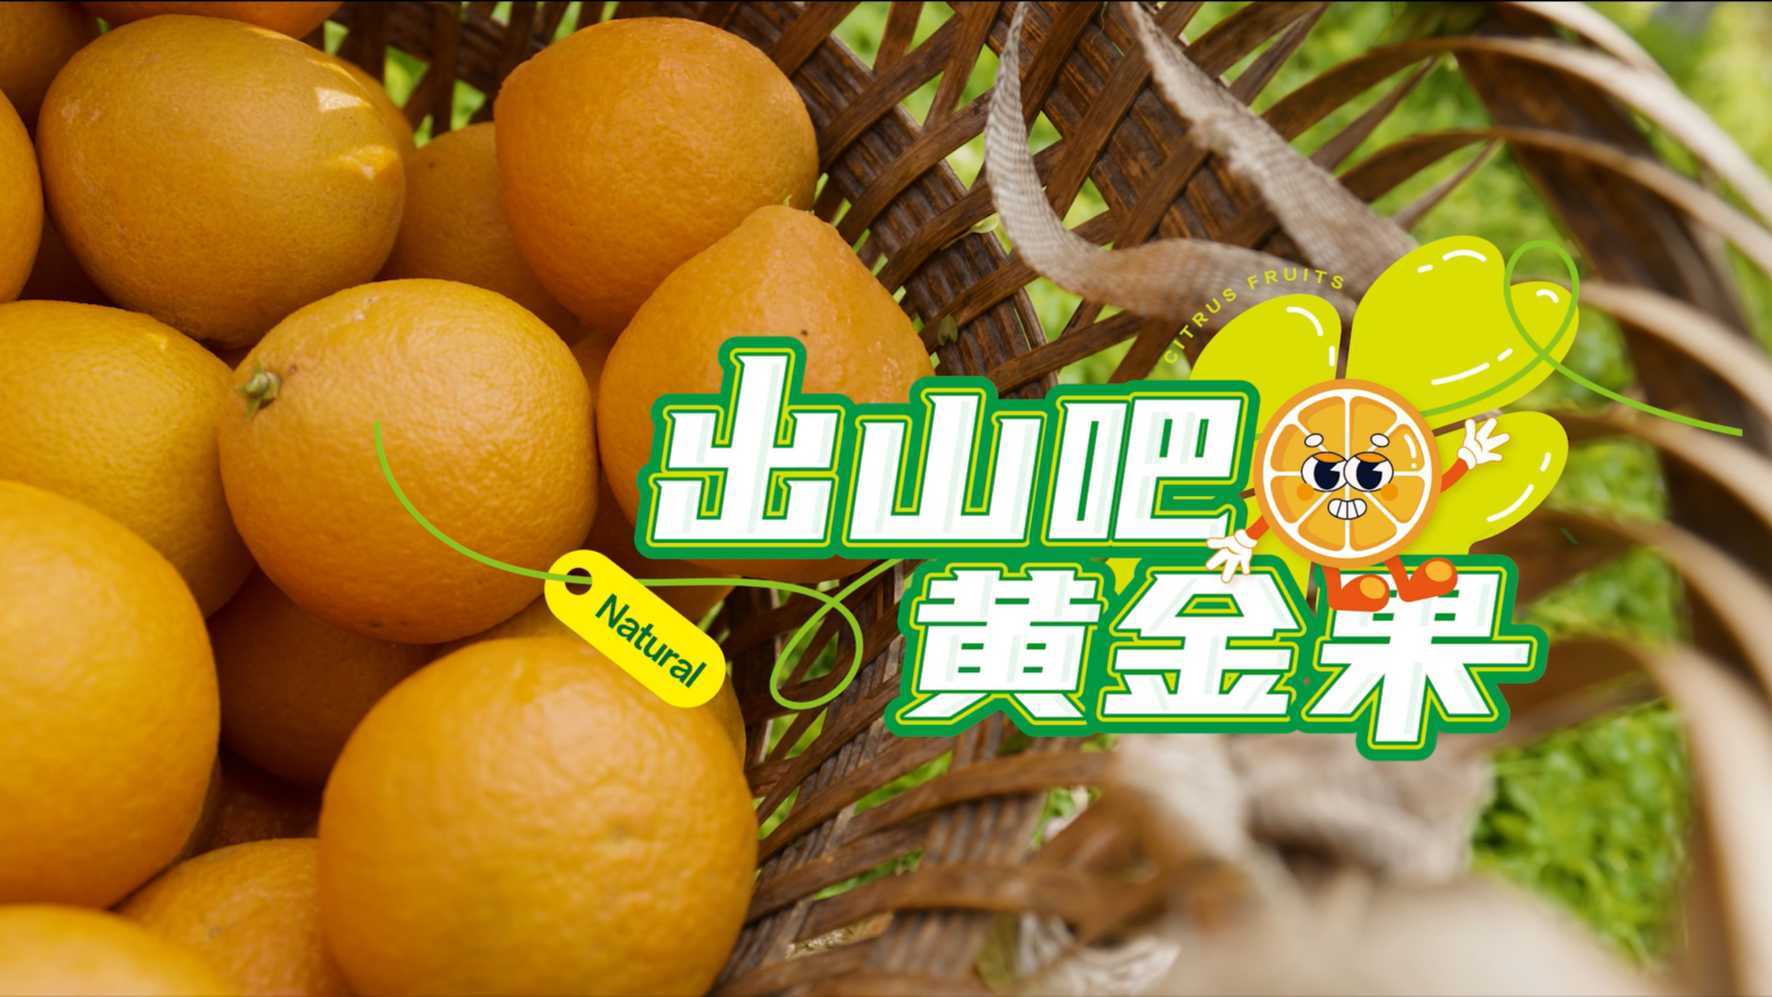 阿里巴巴公益×嘉陵柑橘|《出山吧黄金果》